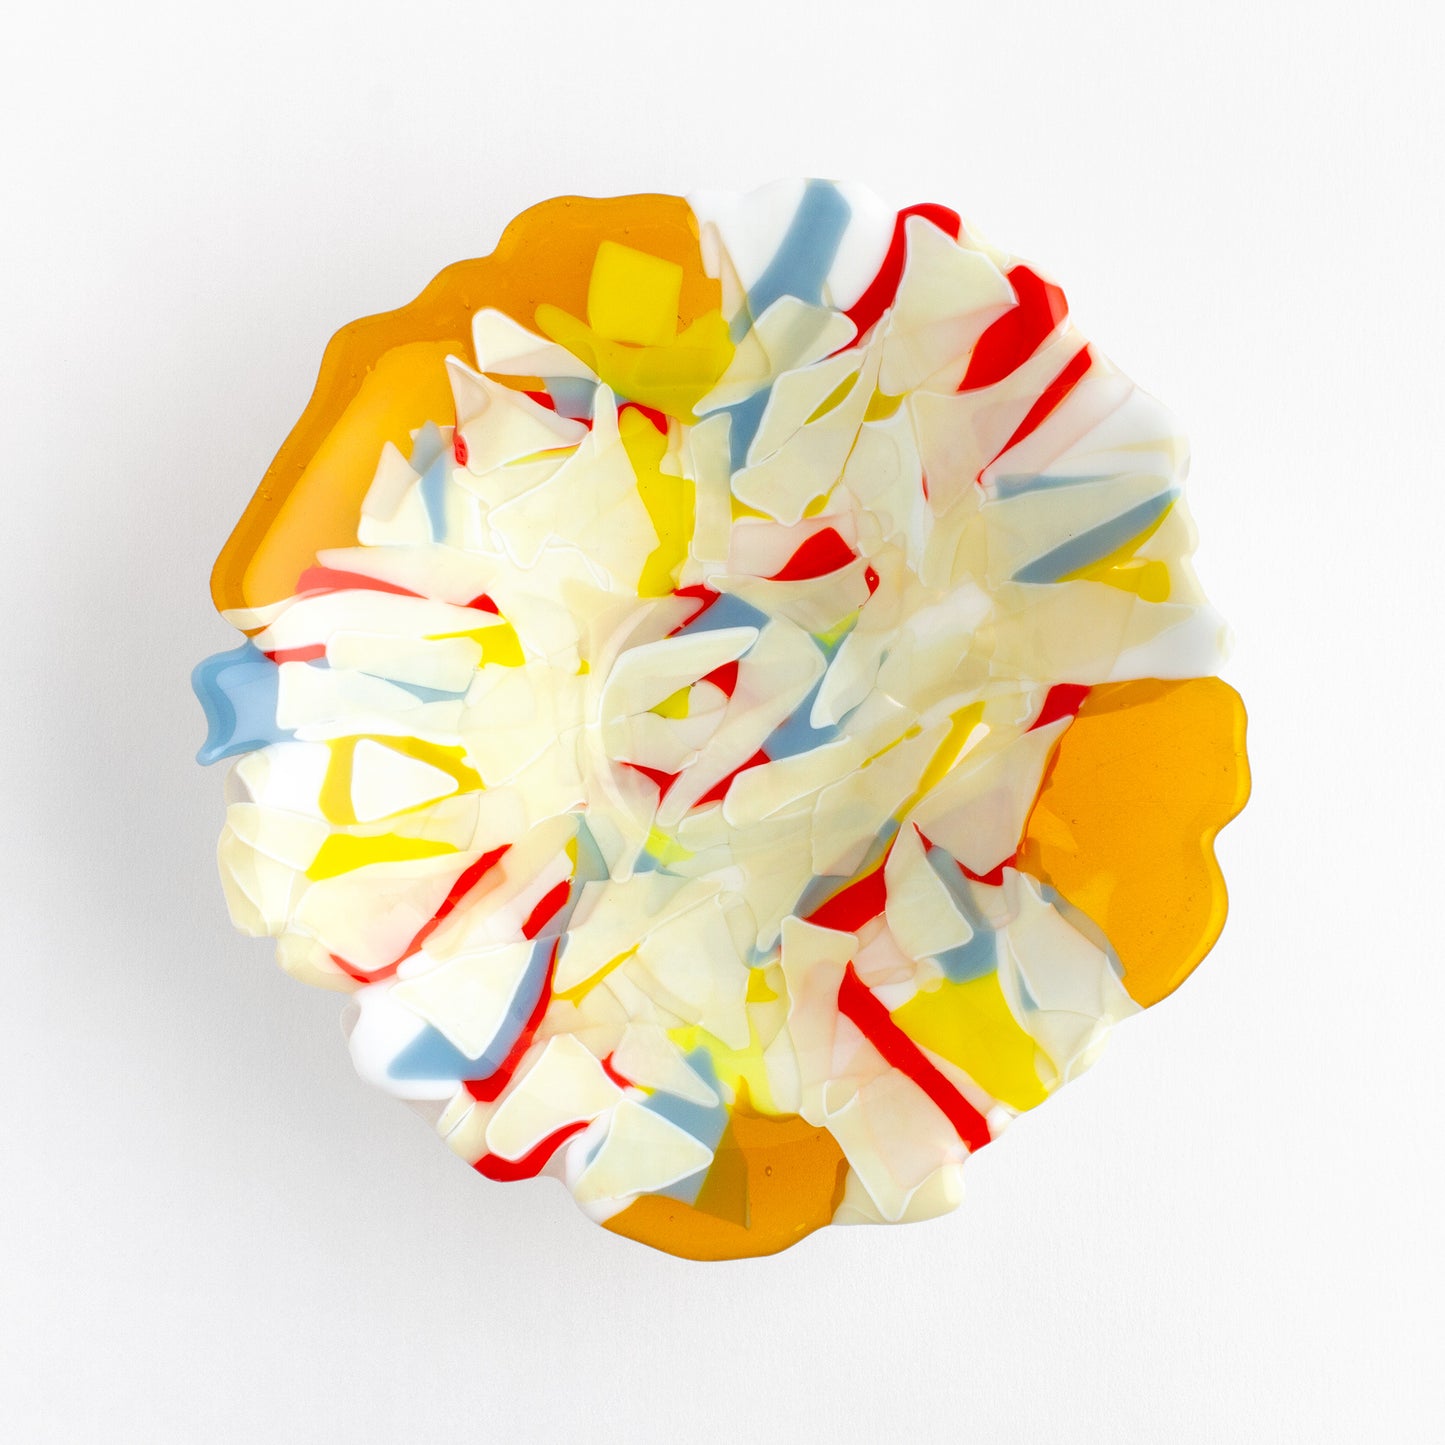 Bowl de Cristal Aglomerado Multicolor